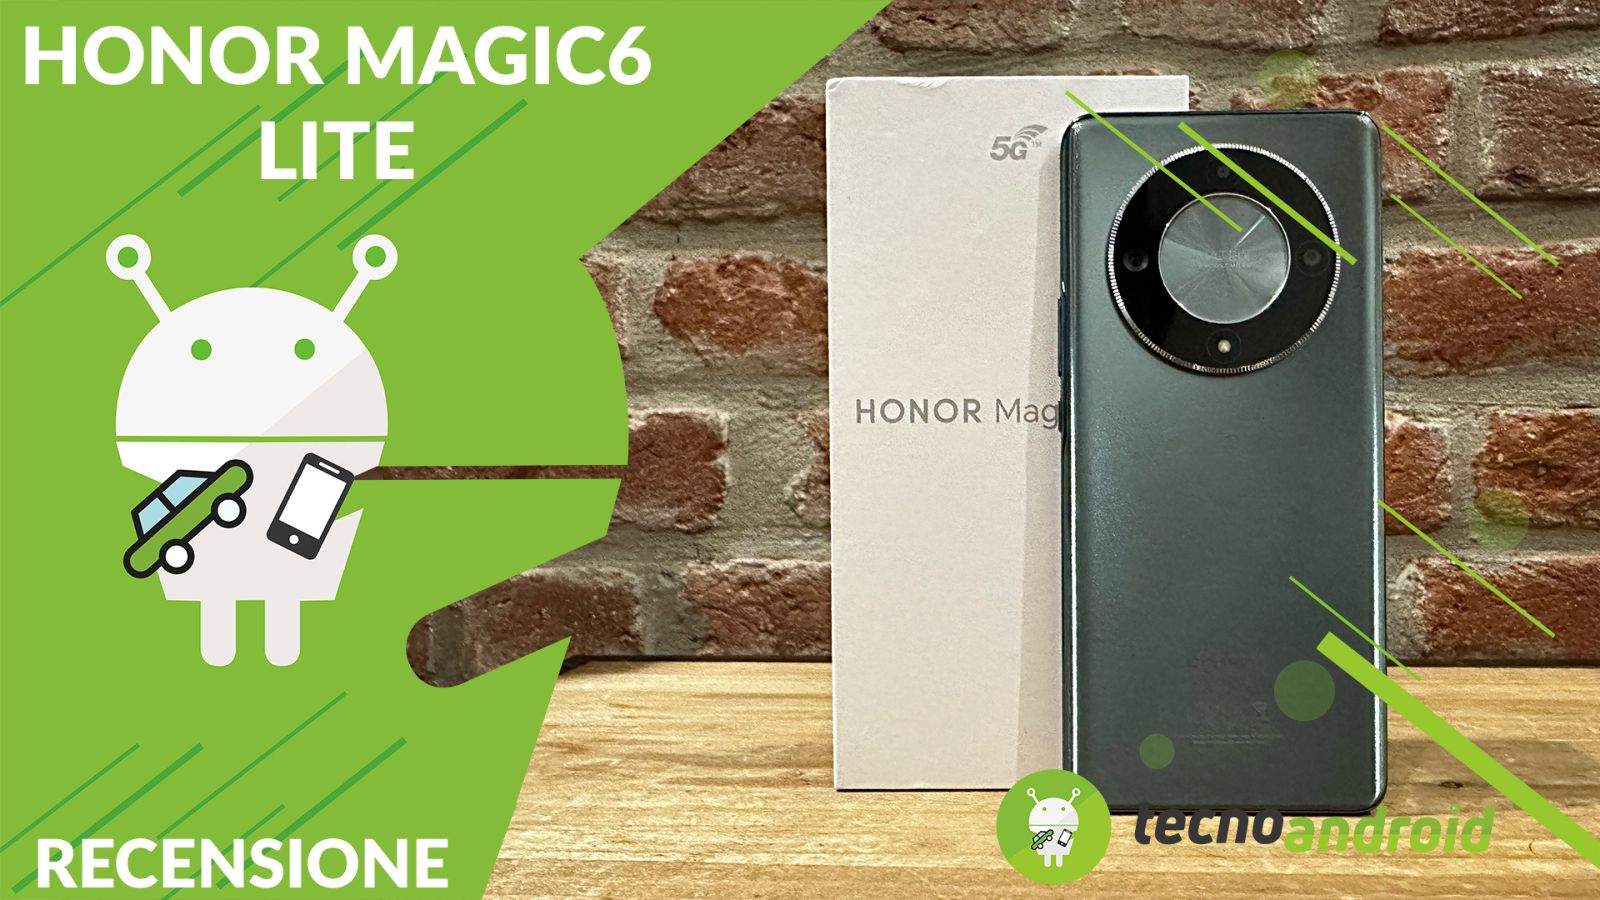 Recensione Honor Magic 6 Lite: autonomia super e grandi prestazioni